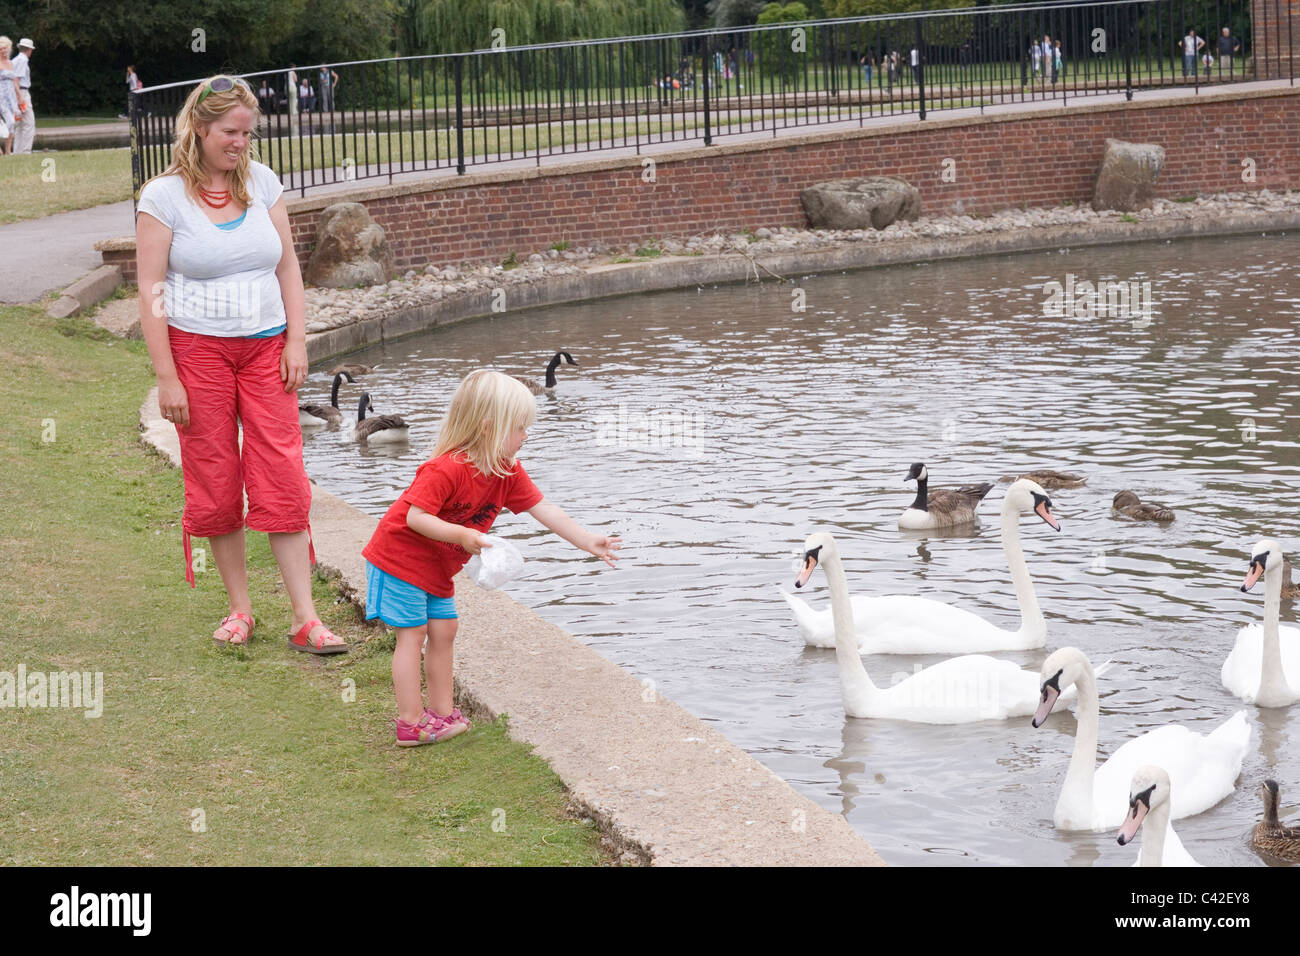 Mutter und Kind, die Fütterung von Wasservögeln. Verulamium Park See, St Albans, Hertfordshire, England. Stockfoto